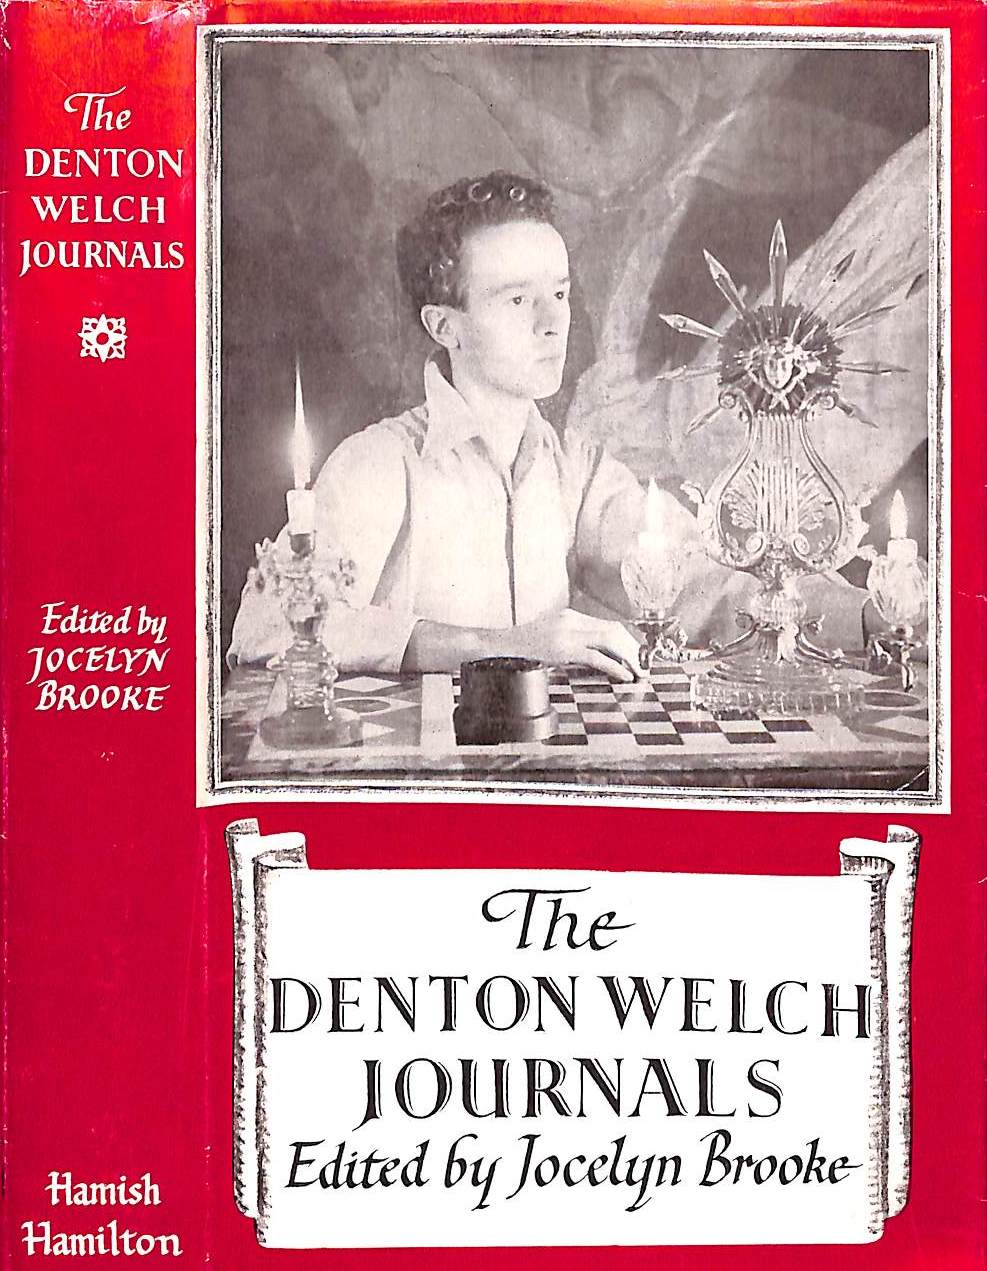 "The Denton Welch Journals" 1952 BROOKE, Jocelyn